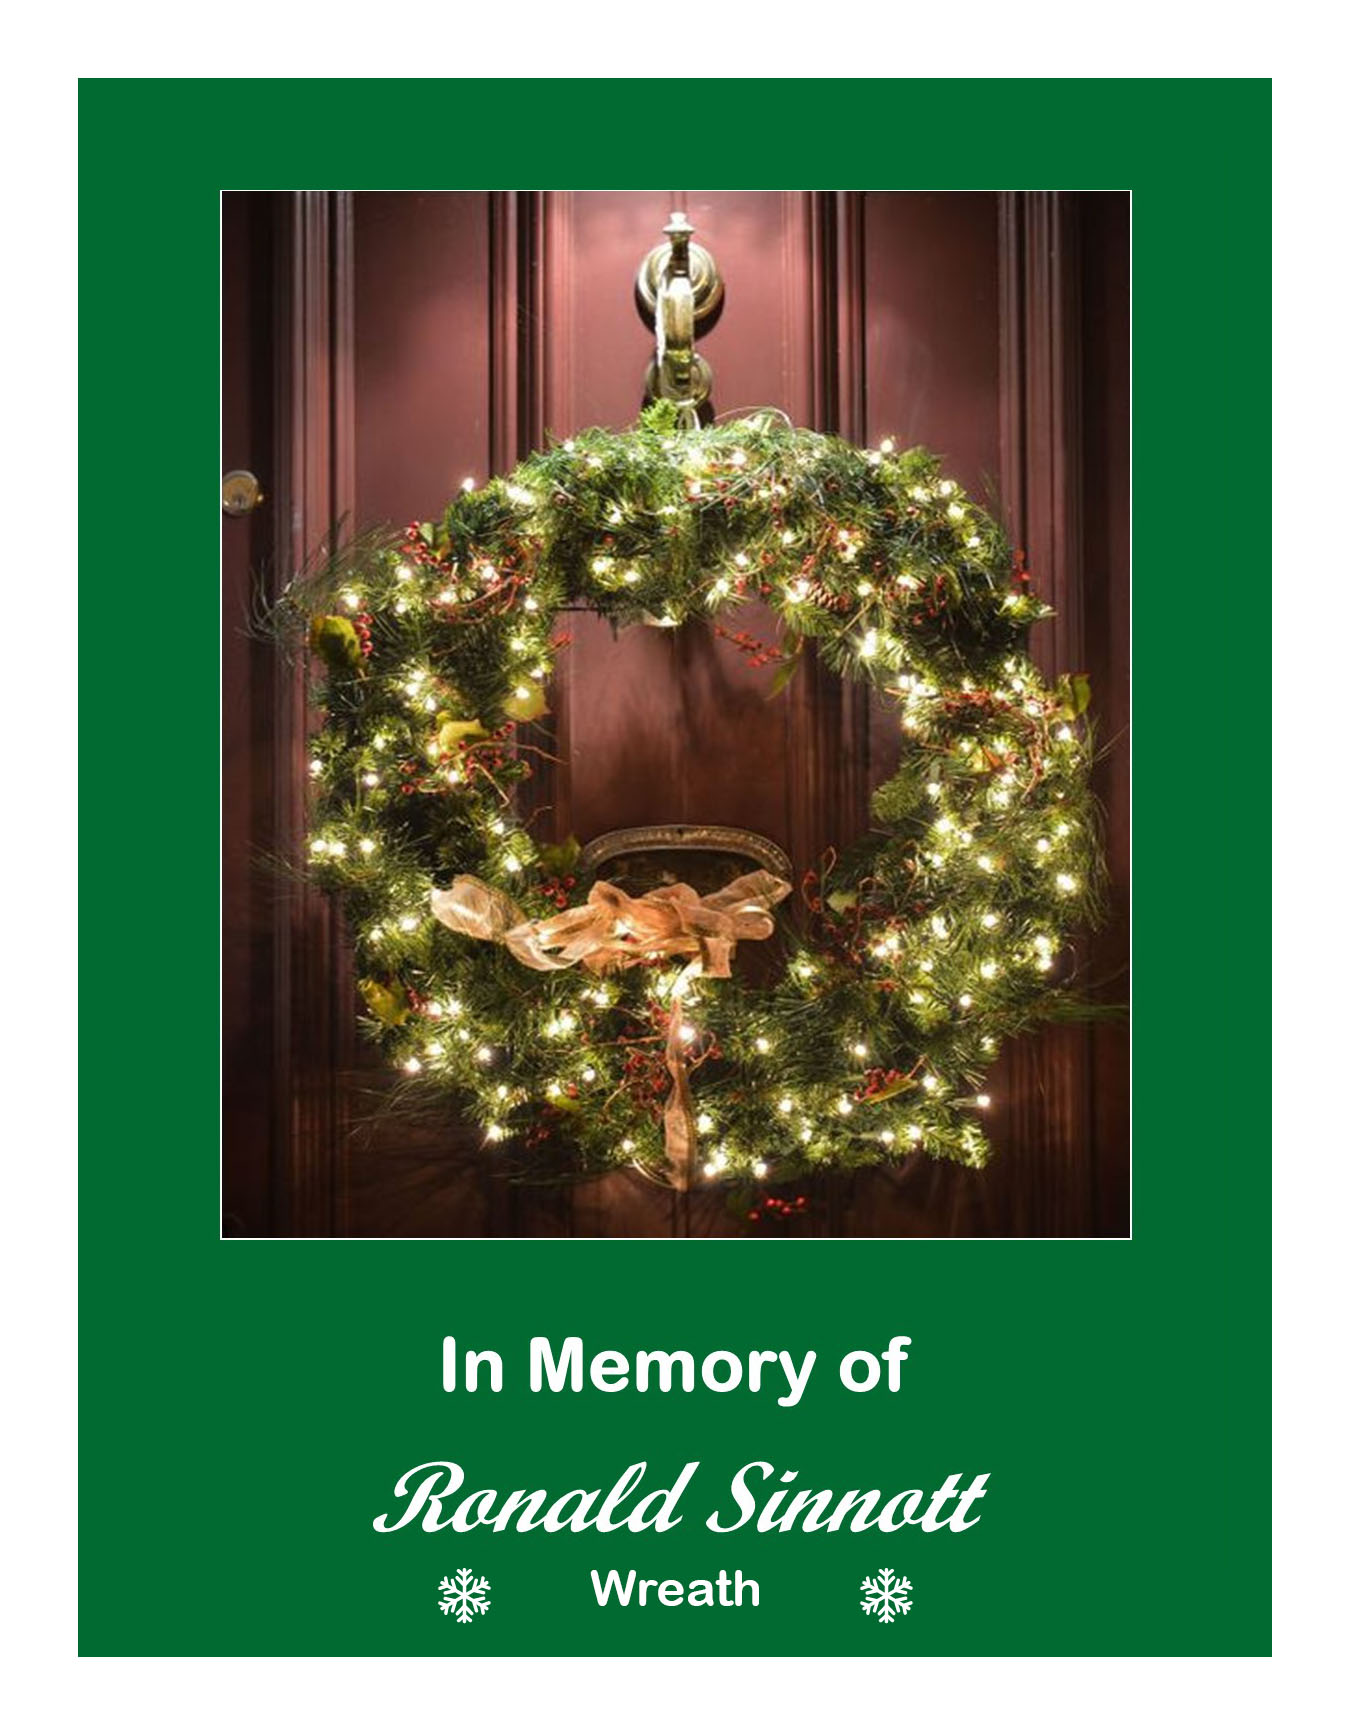 Wreath in memory of Ronald Sinnott